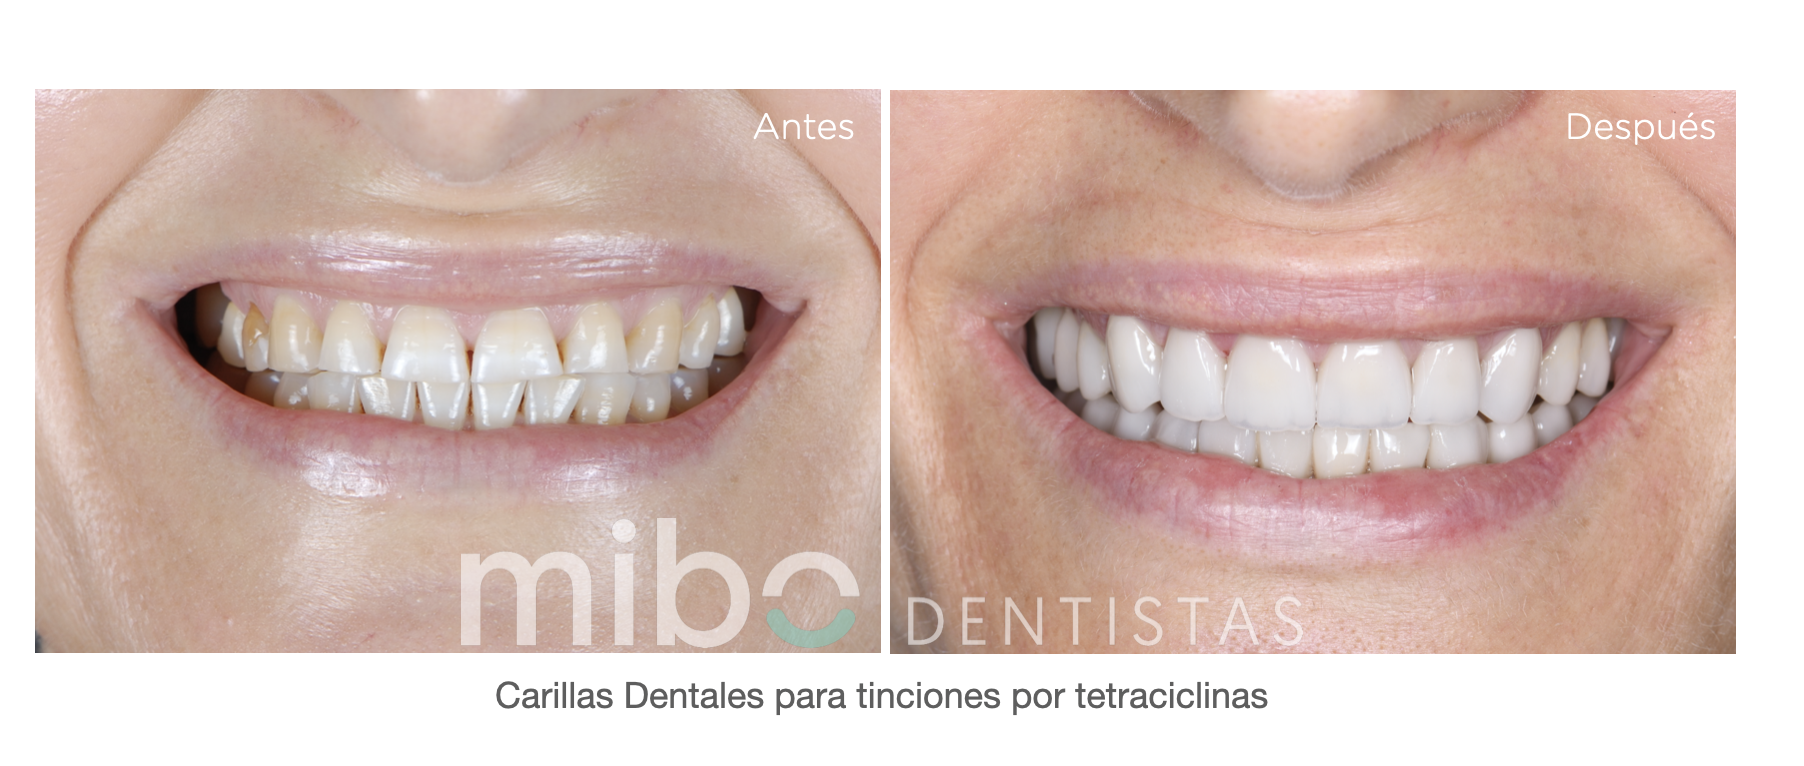 tetraciclinas carillas dentales estetica dental mibo almeria